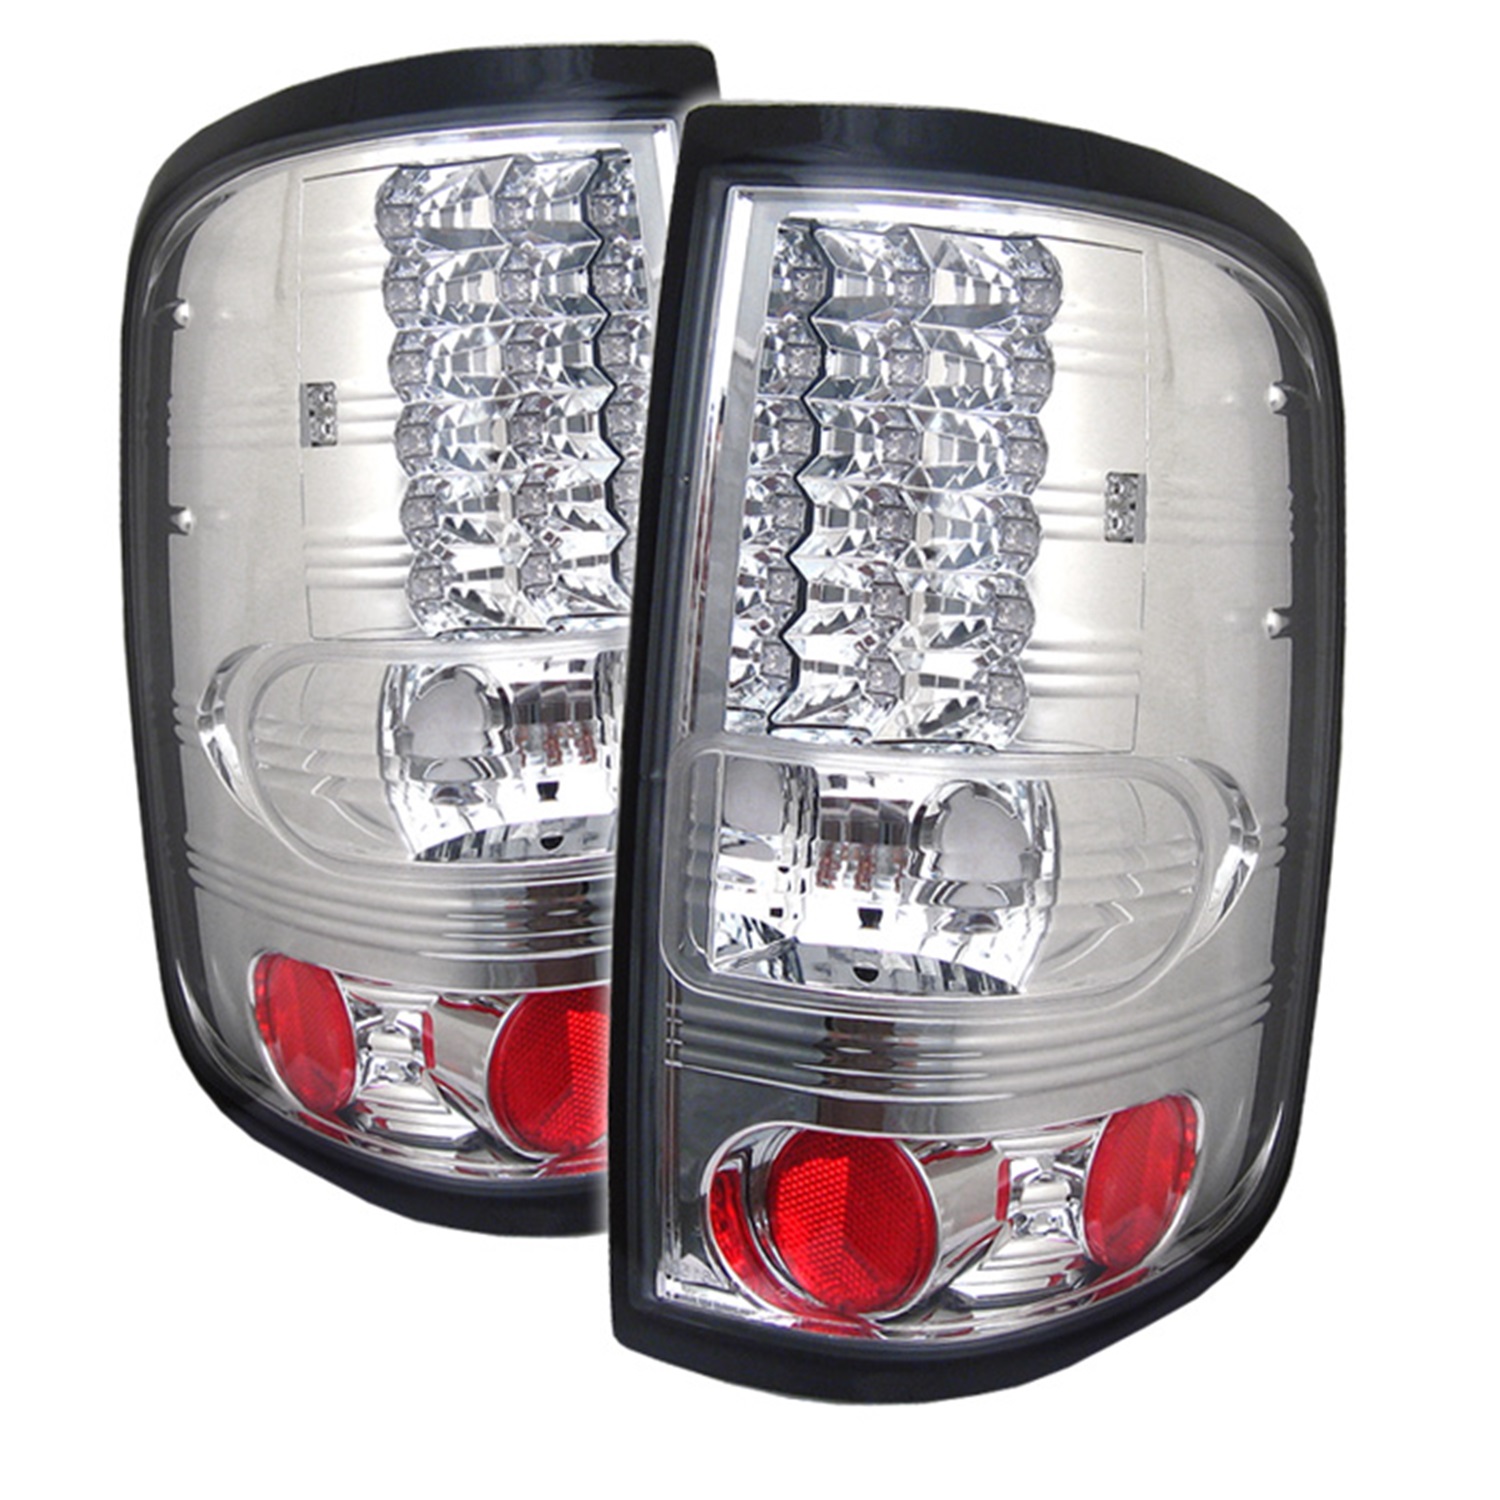 Spyder Auto Spyder Auto 5003256 LED Tail Lights Fits 04-08 F-150